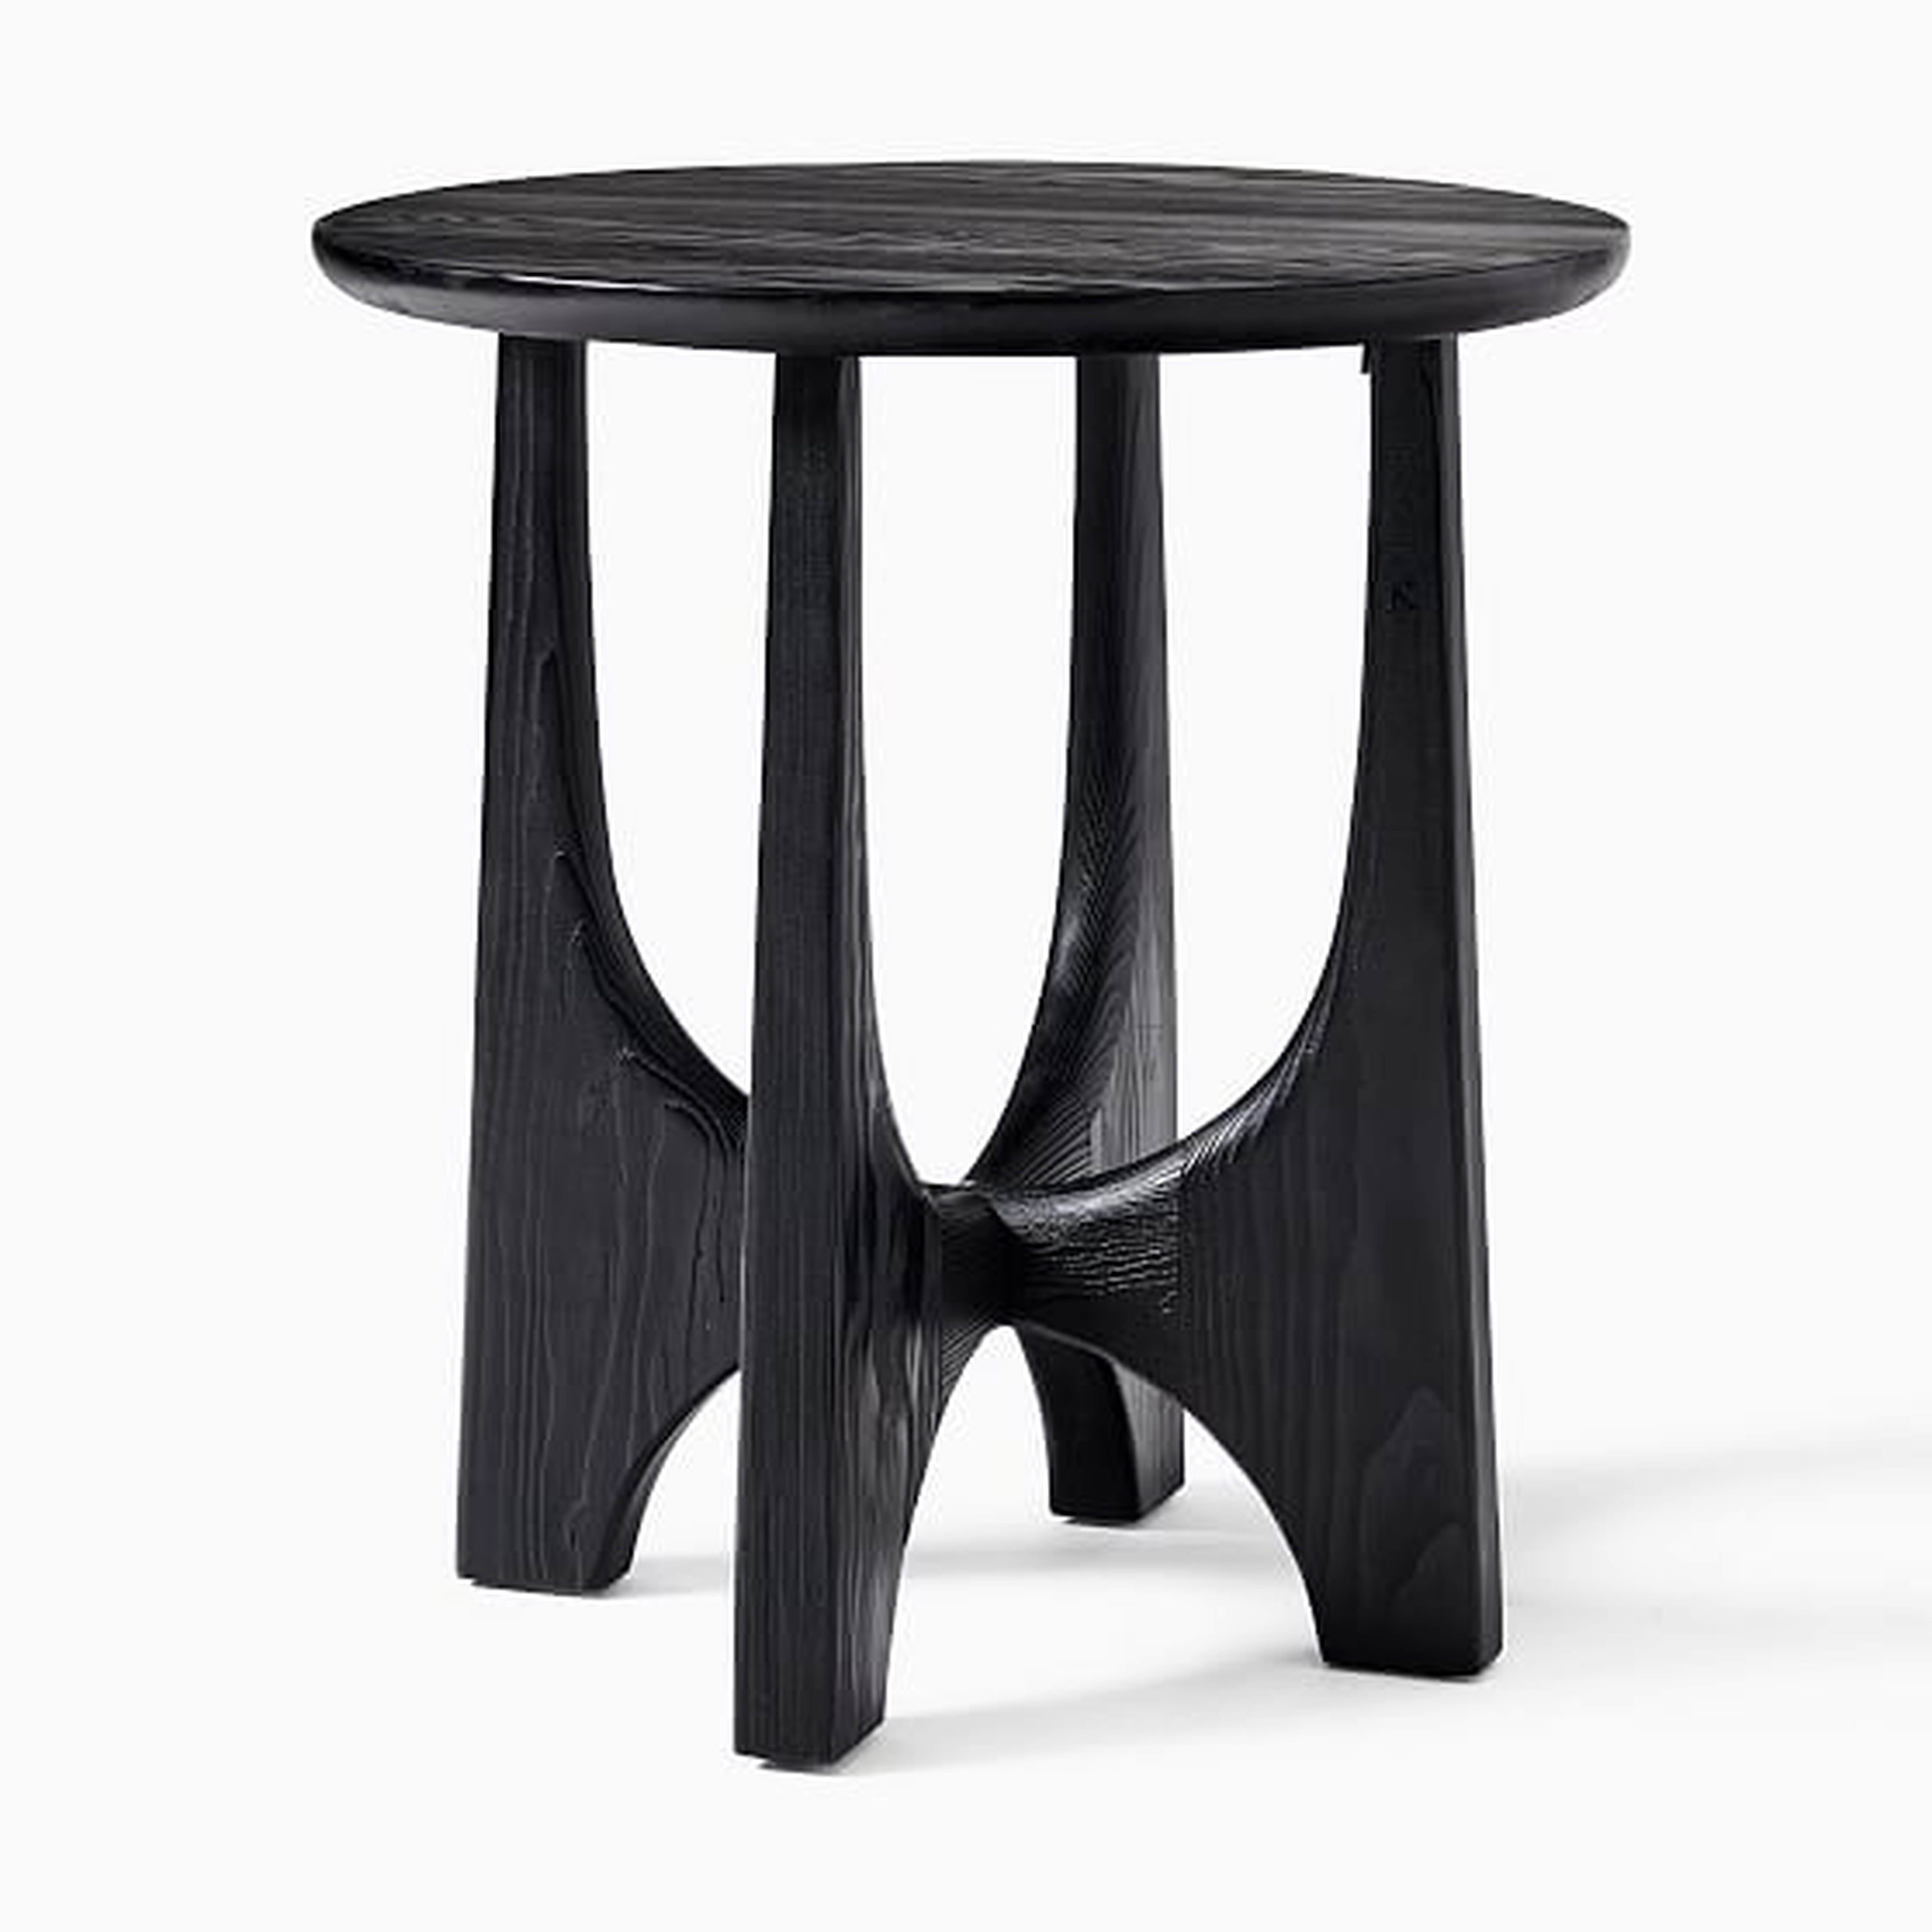 Tanner Solid Wood Round Hemlock Side Table, Black - West Elm